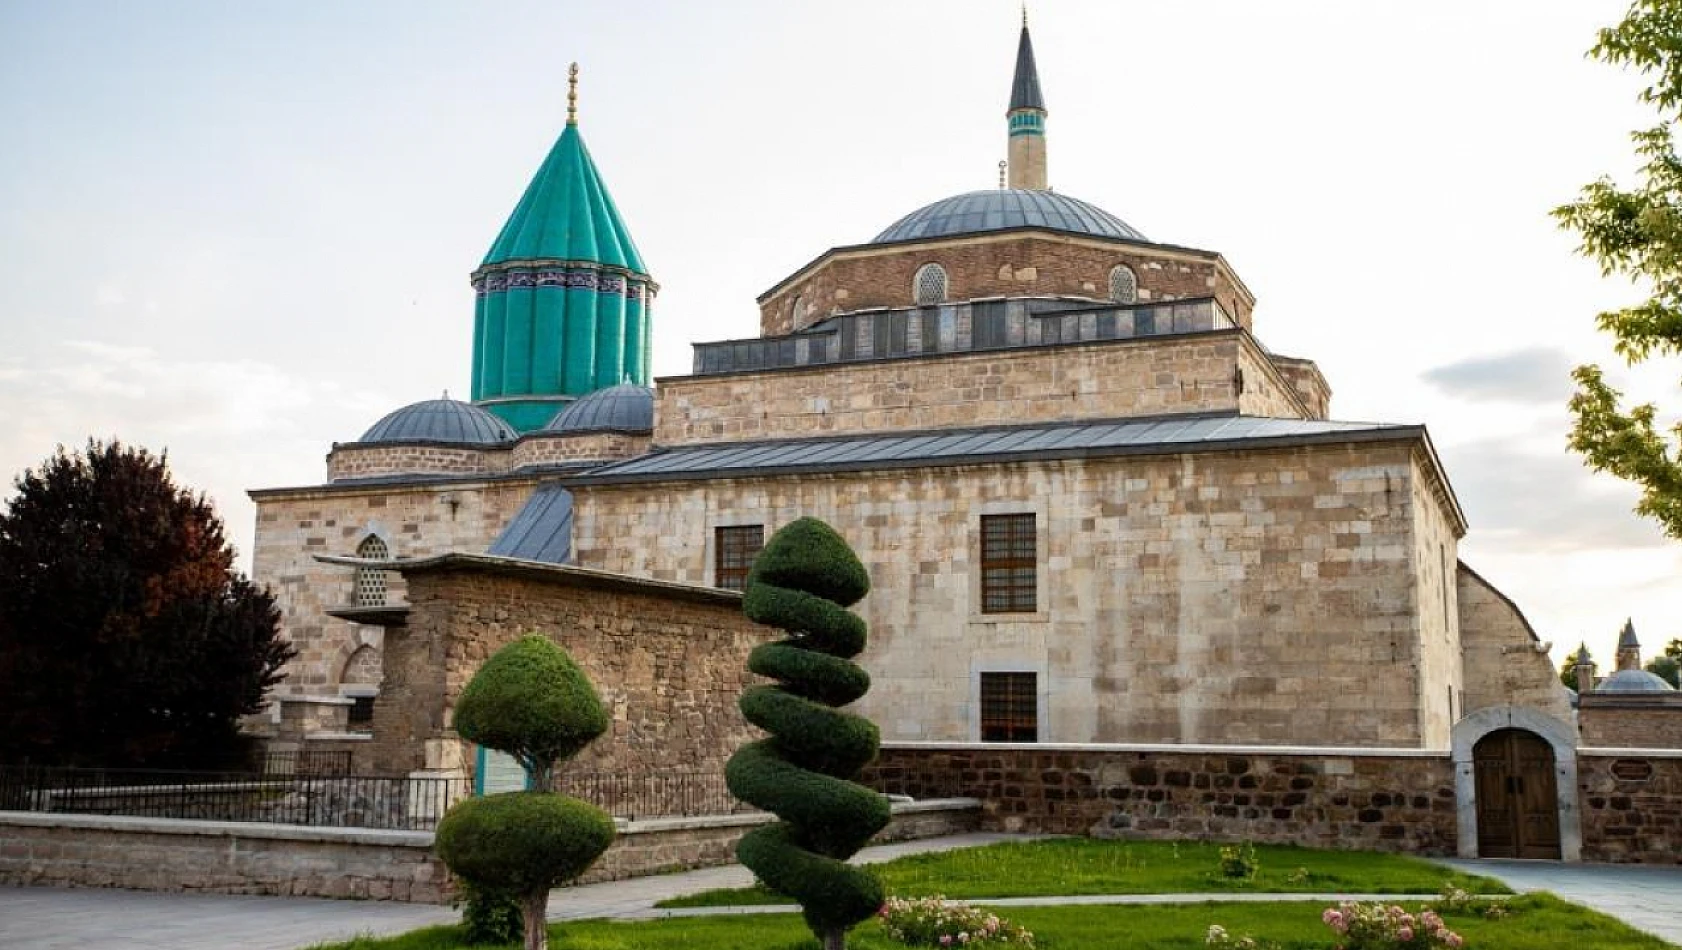 Kültür ve Turizm Bakanı Mehmet Nuri Ersoy açıkladı! Konya Mevlana Müzesi ilk sırada yer aldı!